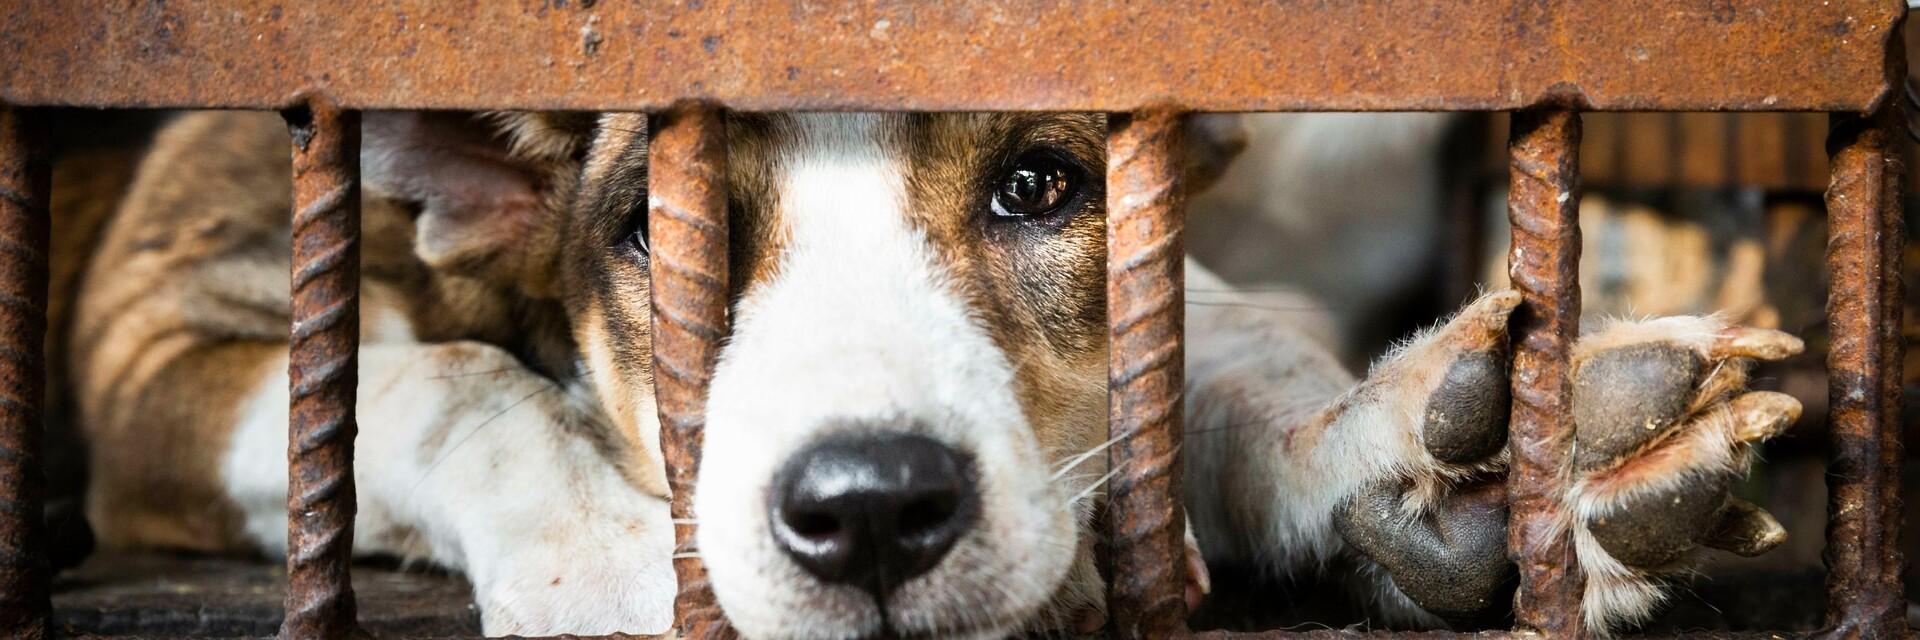 Un chien dans une cage destiné à être consommé